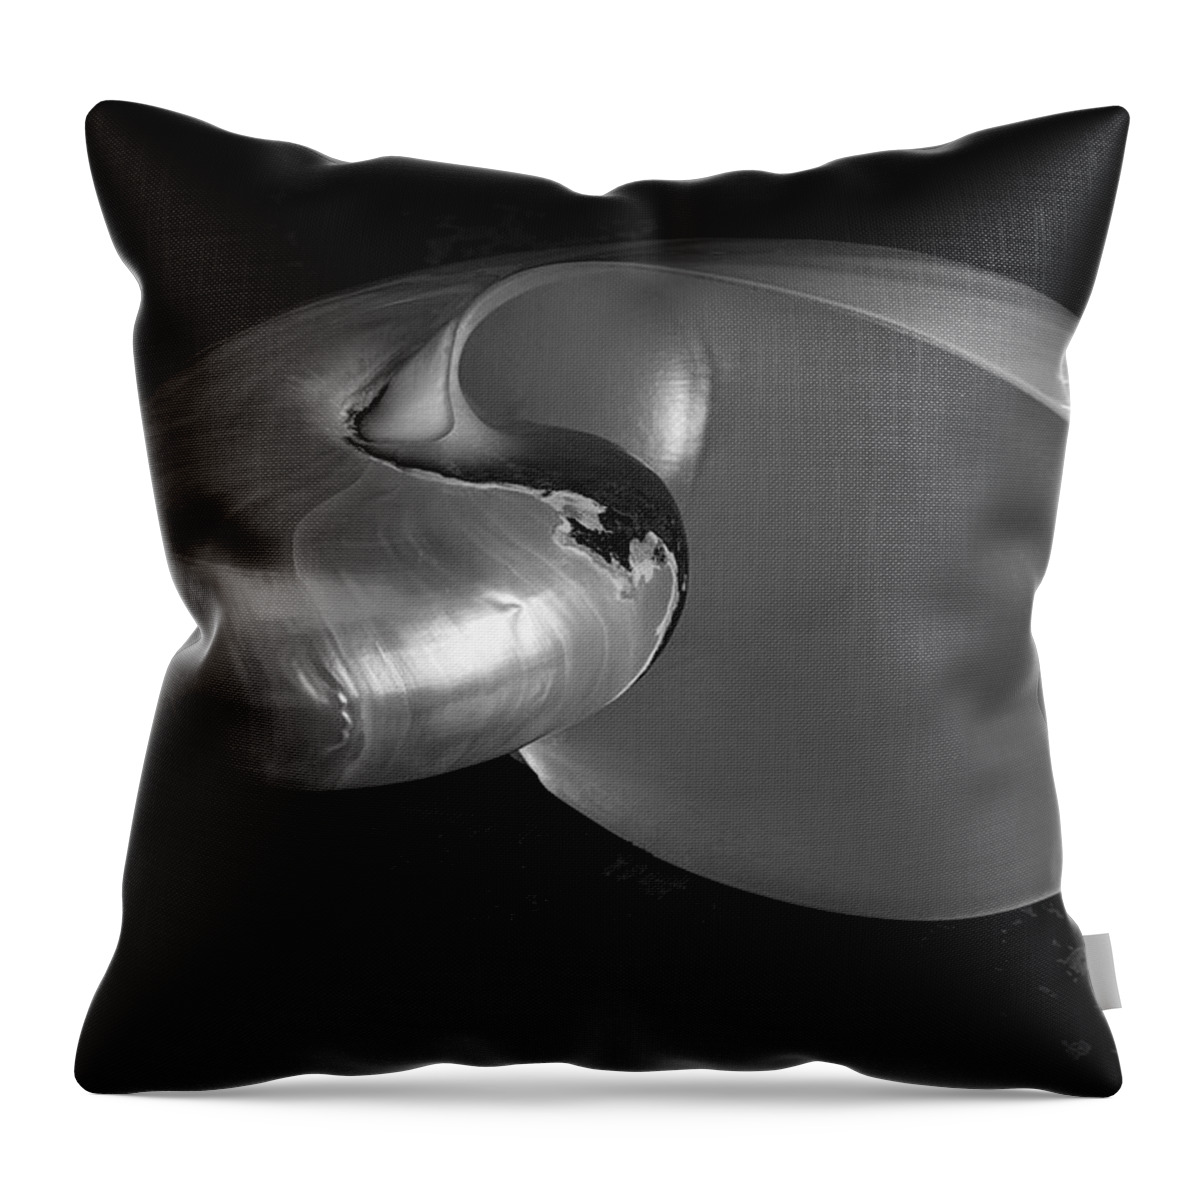 Nautilus Throw Pillow featuring the photograph Nautilus Shell II BW by David Gordon